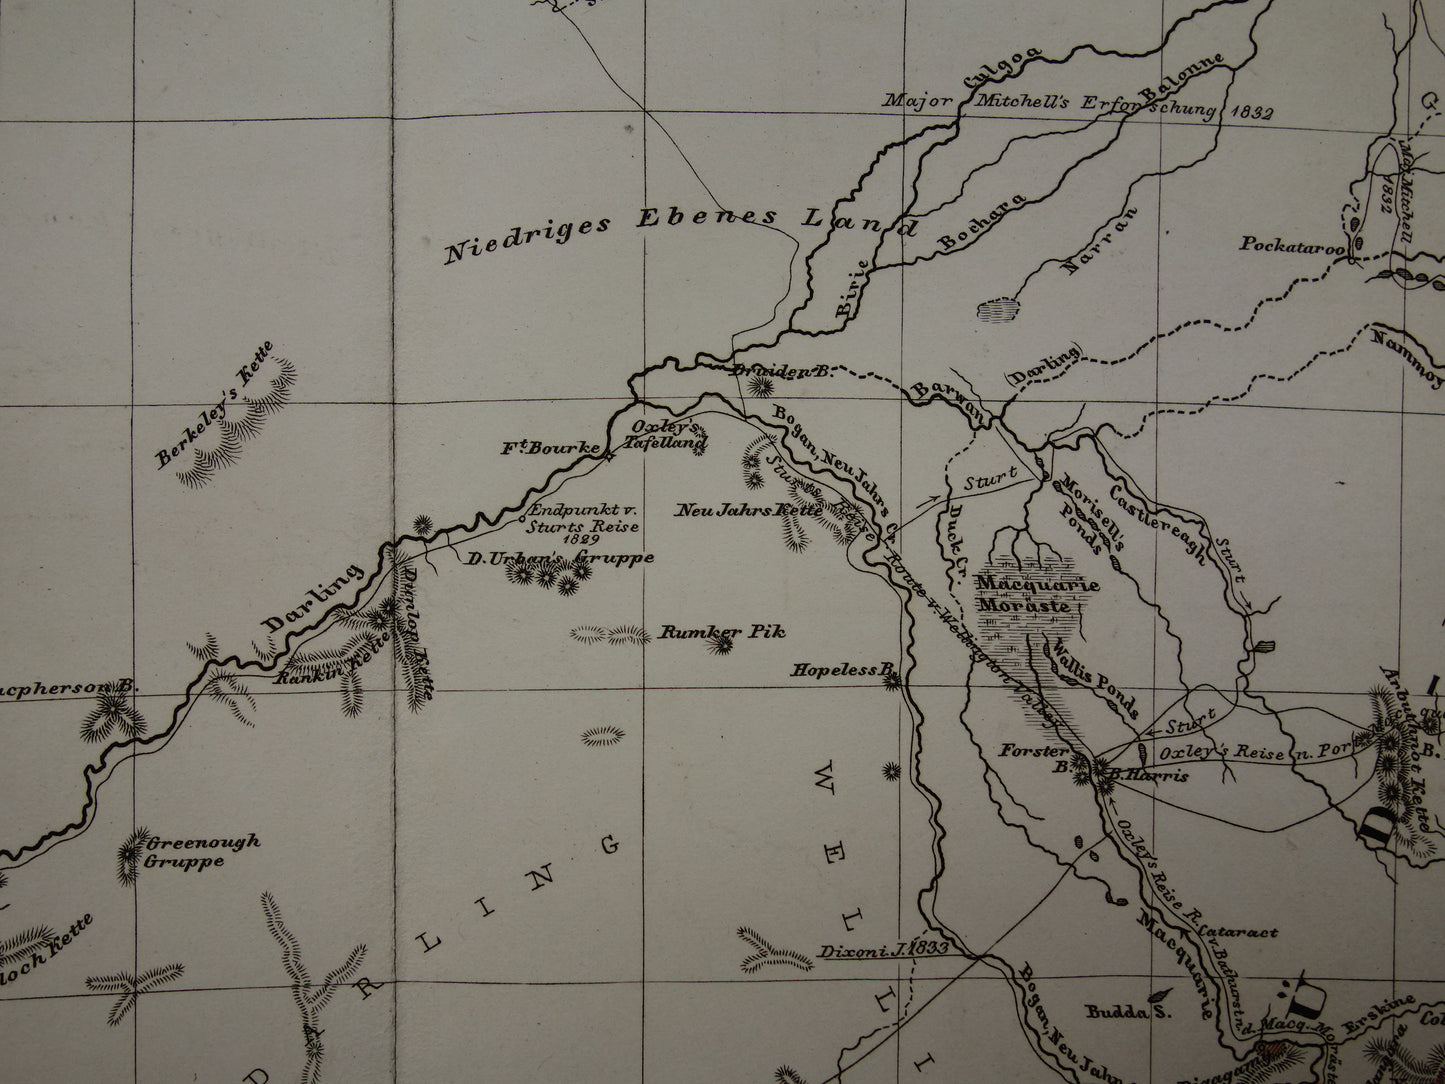 AUSTRALIE grote oude kaart van zuidoost Australië in 1859 originele antieke Duitse landkaart - vintage landkaarten